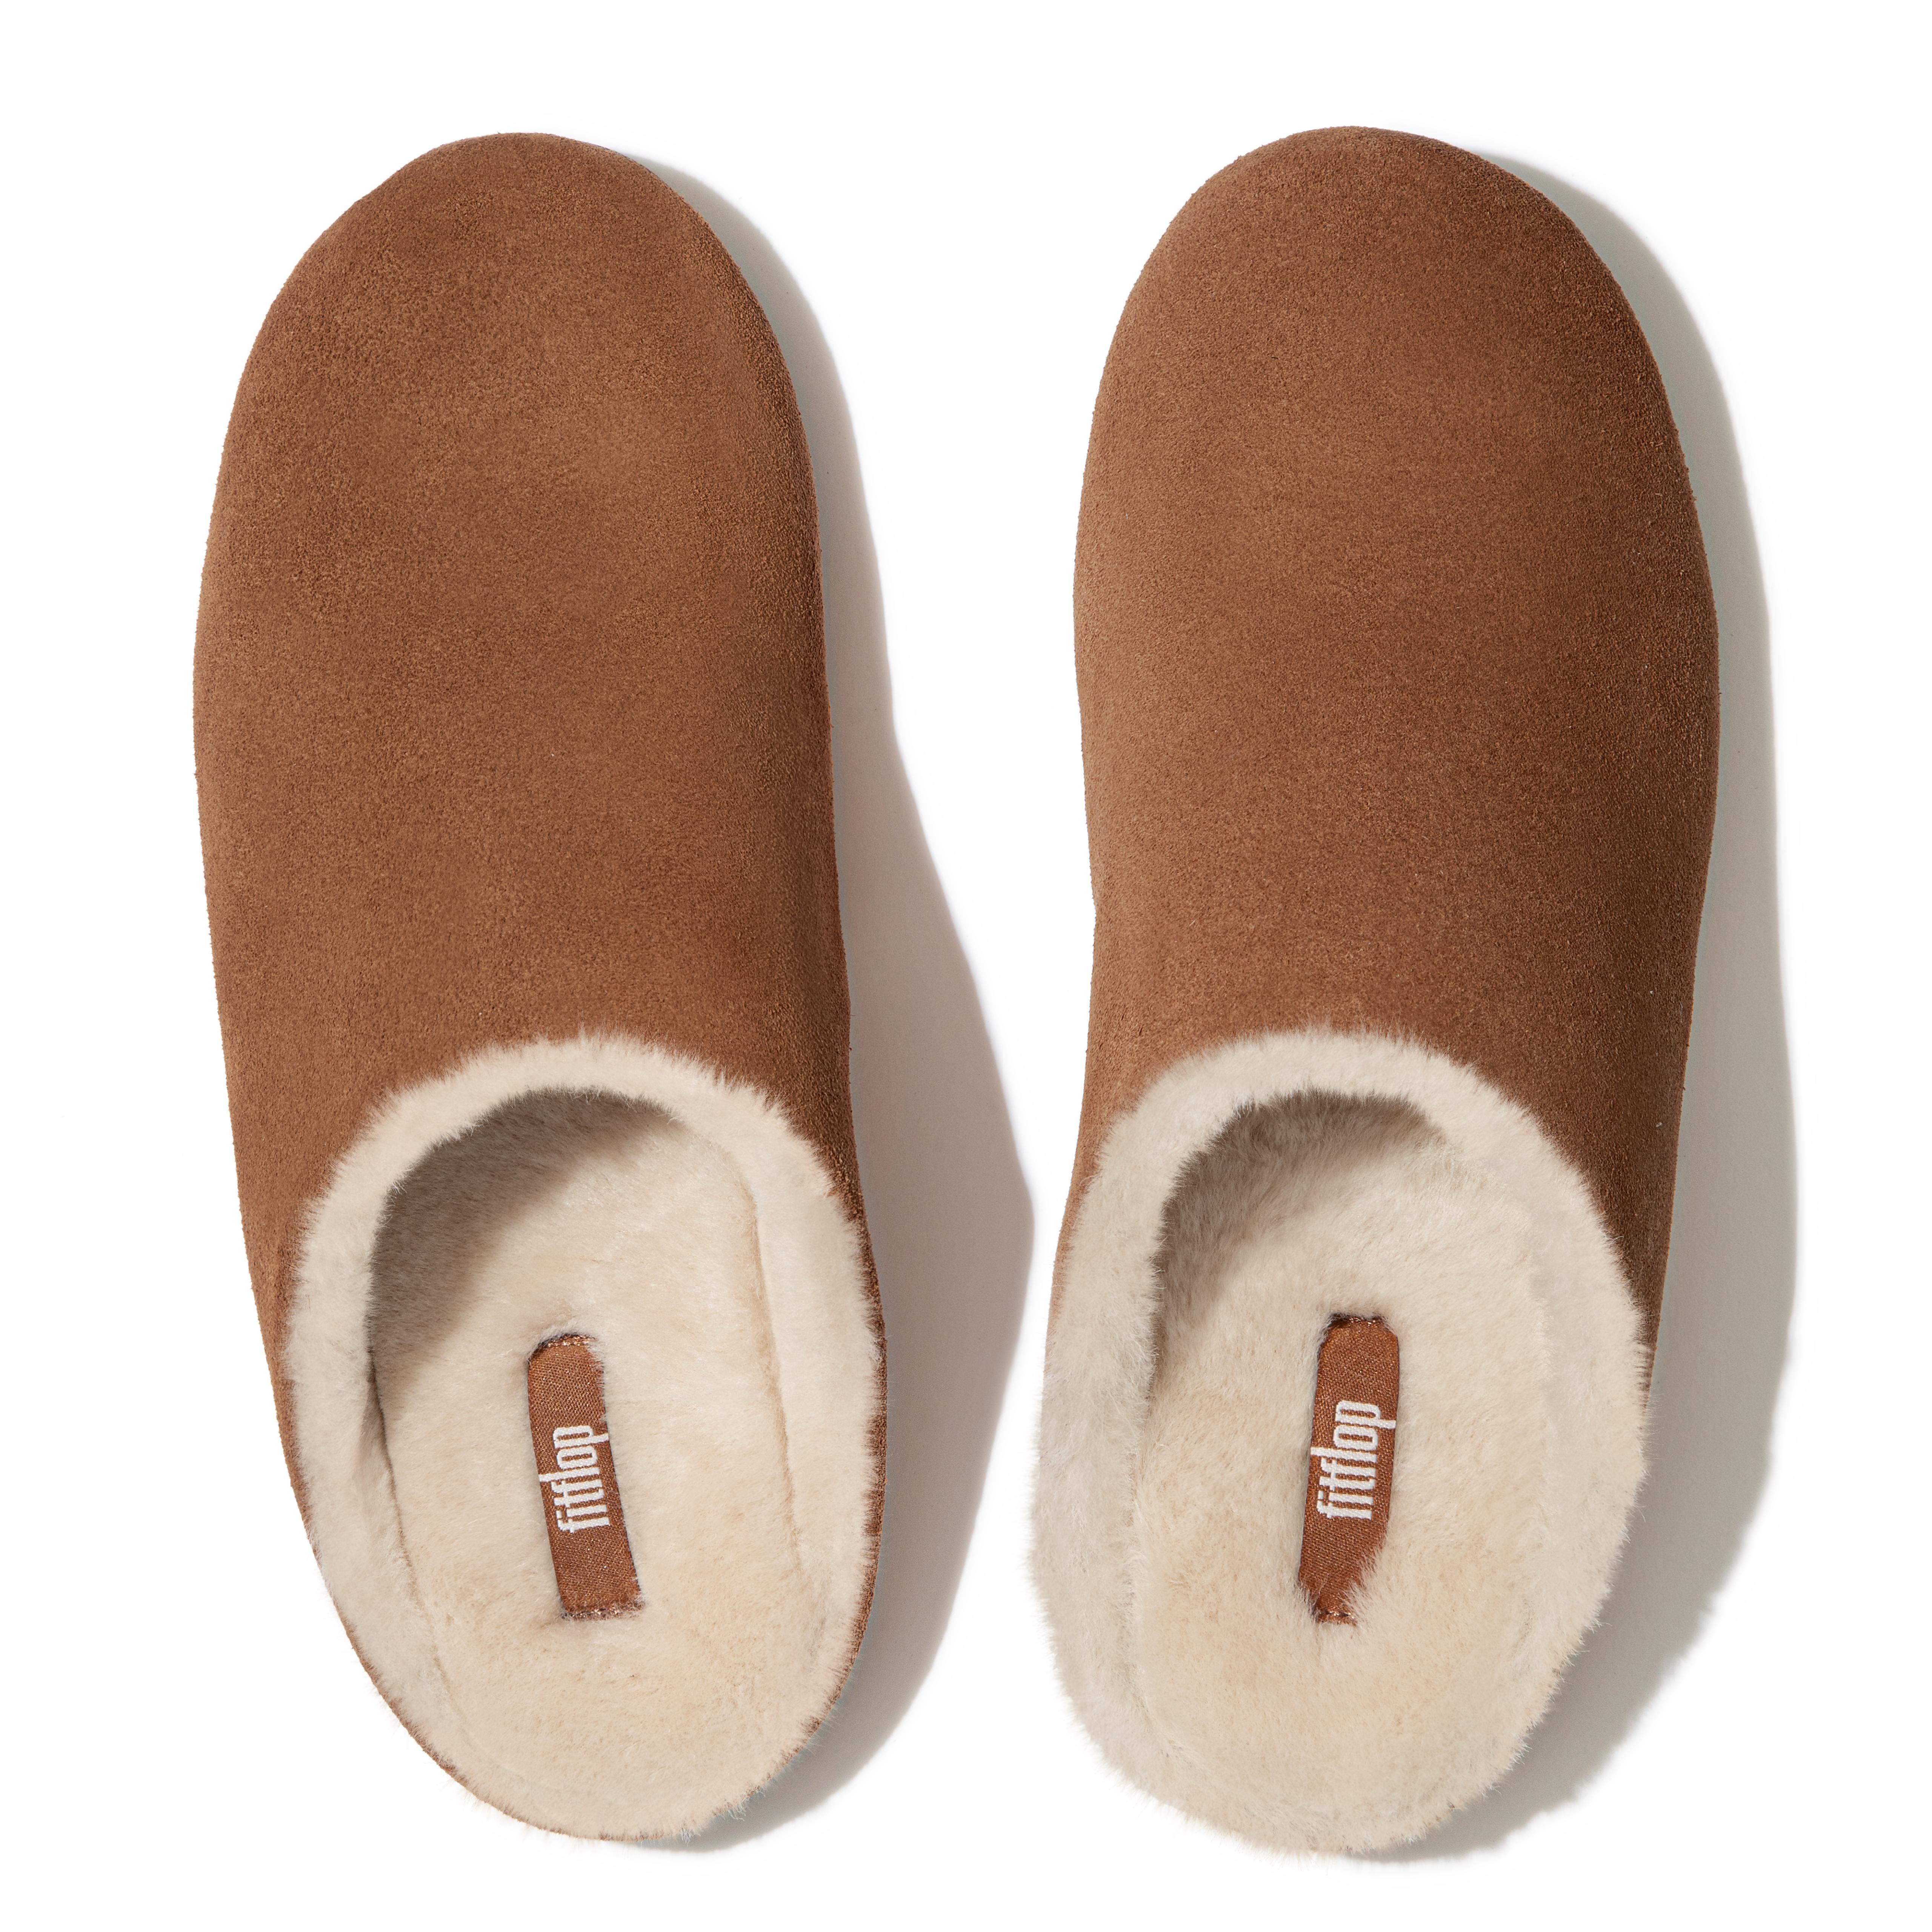 fitflop sheepskin slippers